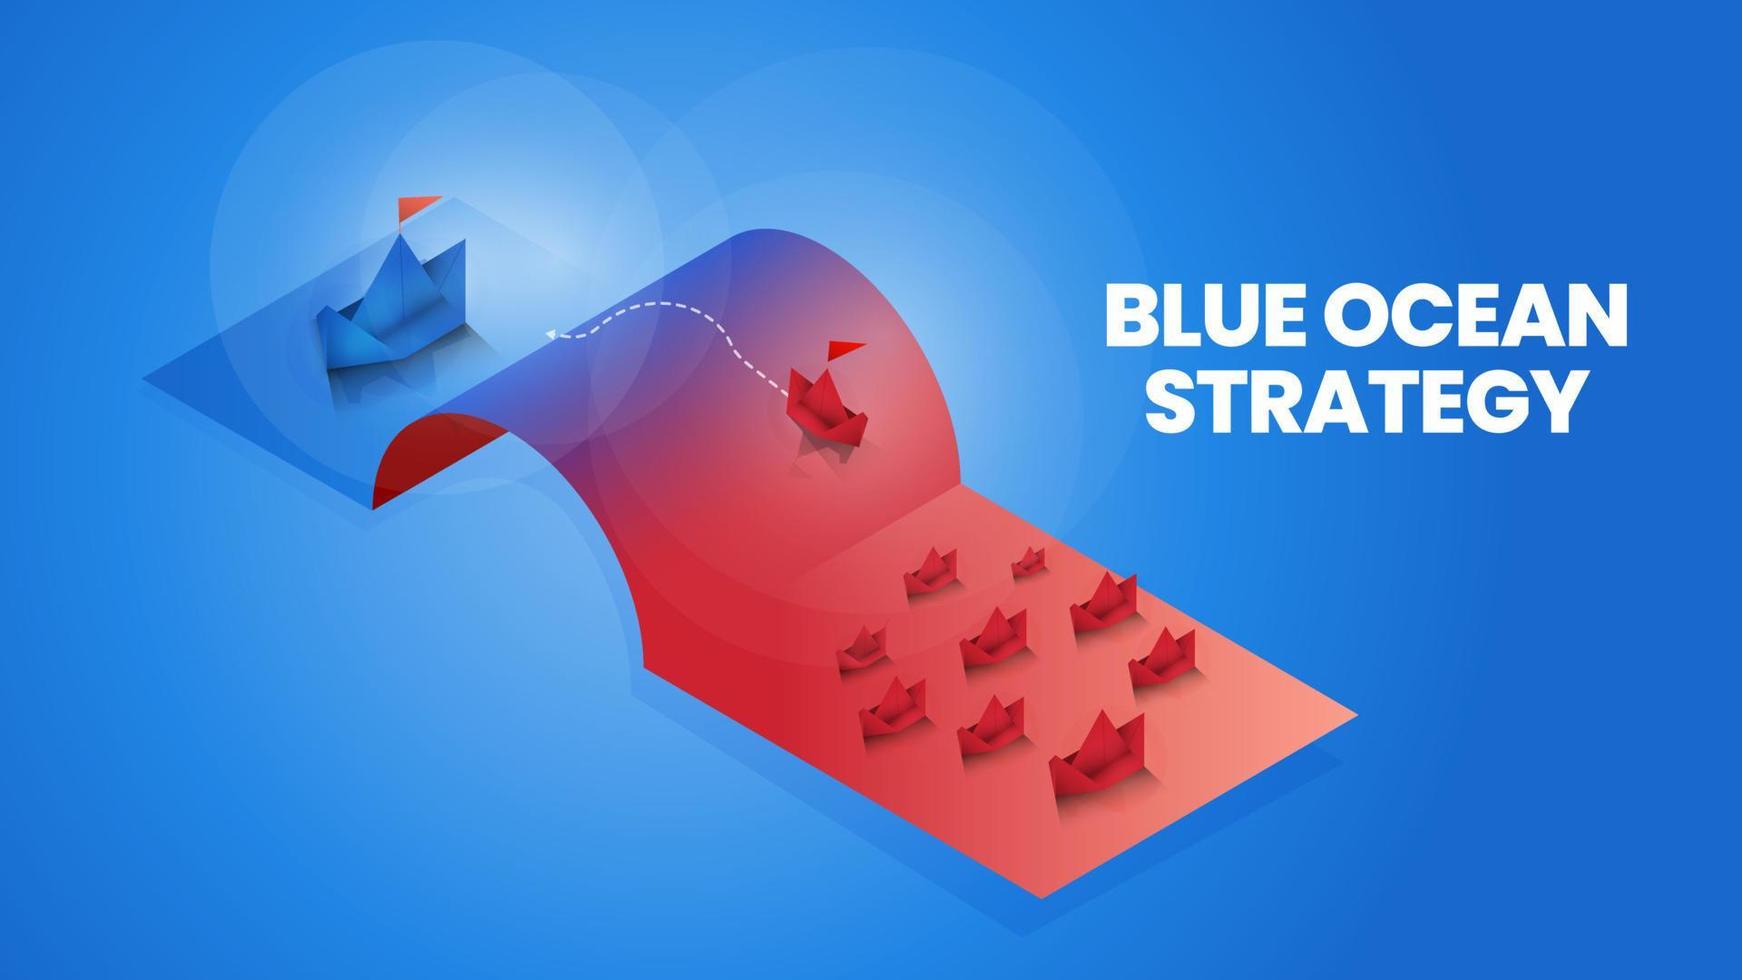 la estrategia isométrica del océano azul es el mercado de comparación 2, el océano rojo y el mercado del océano azul y el cliente para el análisis y el plan de marketing. El mercado pionero de la metáfora de la presentación del origami no tiene competencia vector